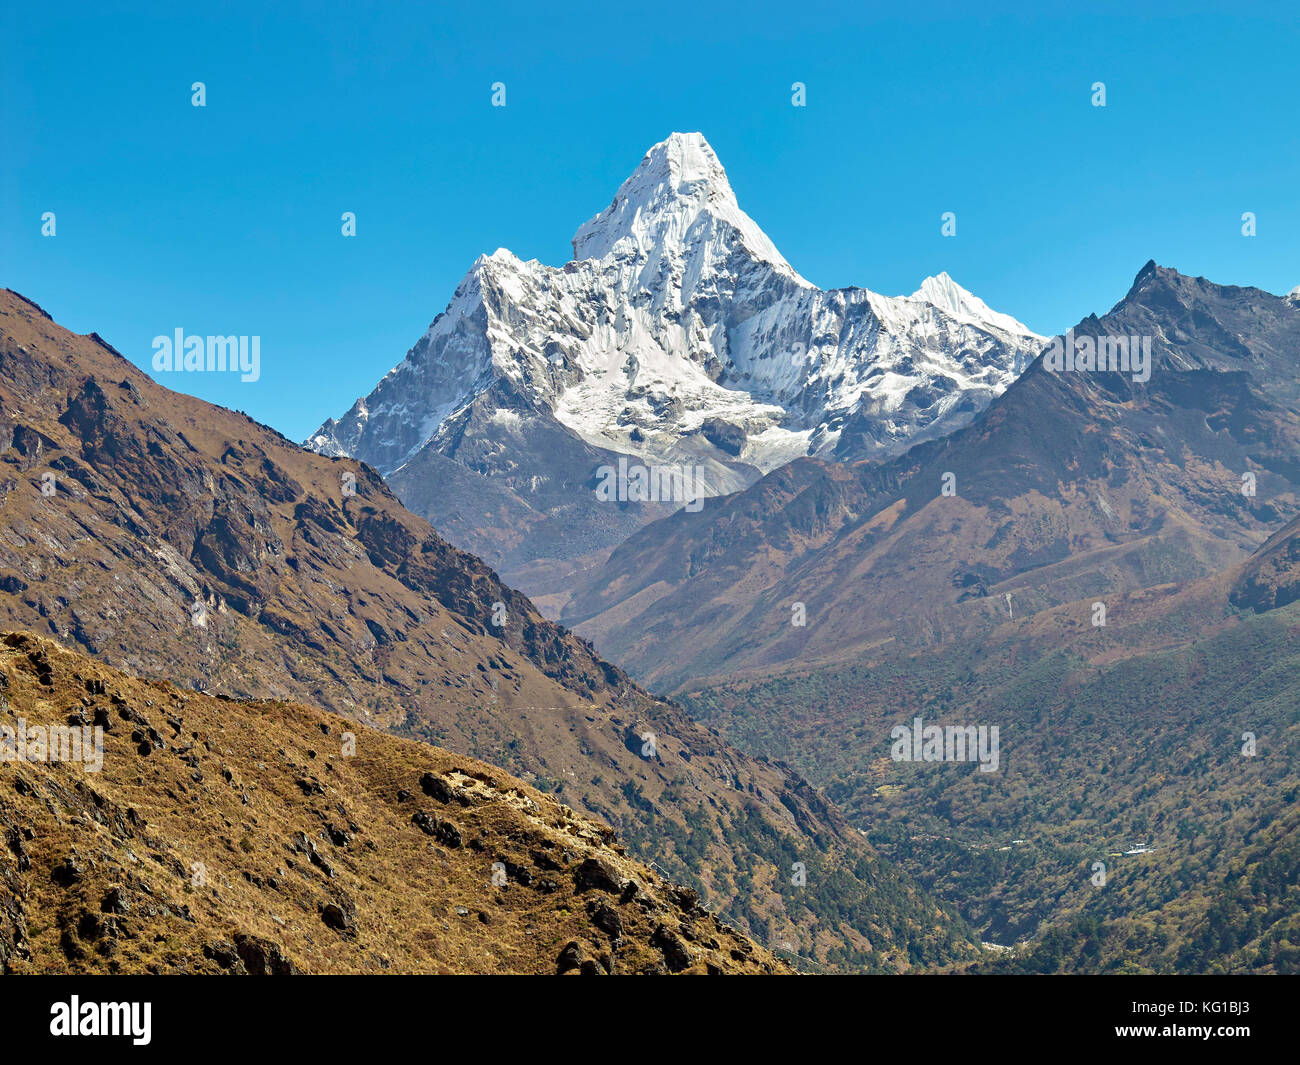 L'Ama Dablam montagne. Le pic principal est 6812 mètres, région de l'Everest de l'Himalaya, au Népal. Banque D'Images